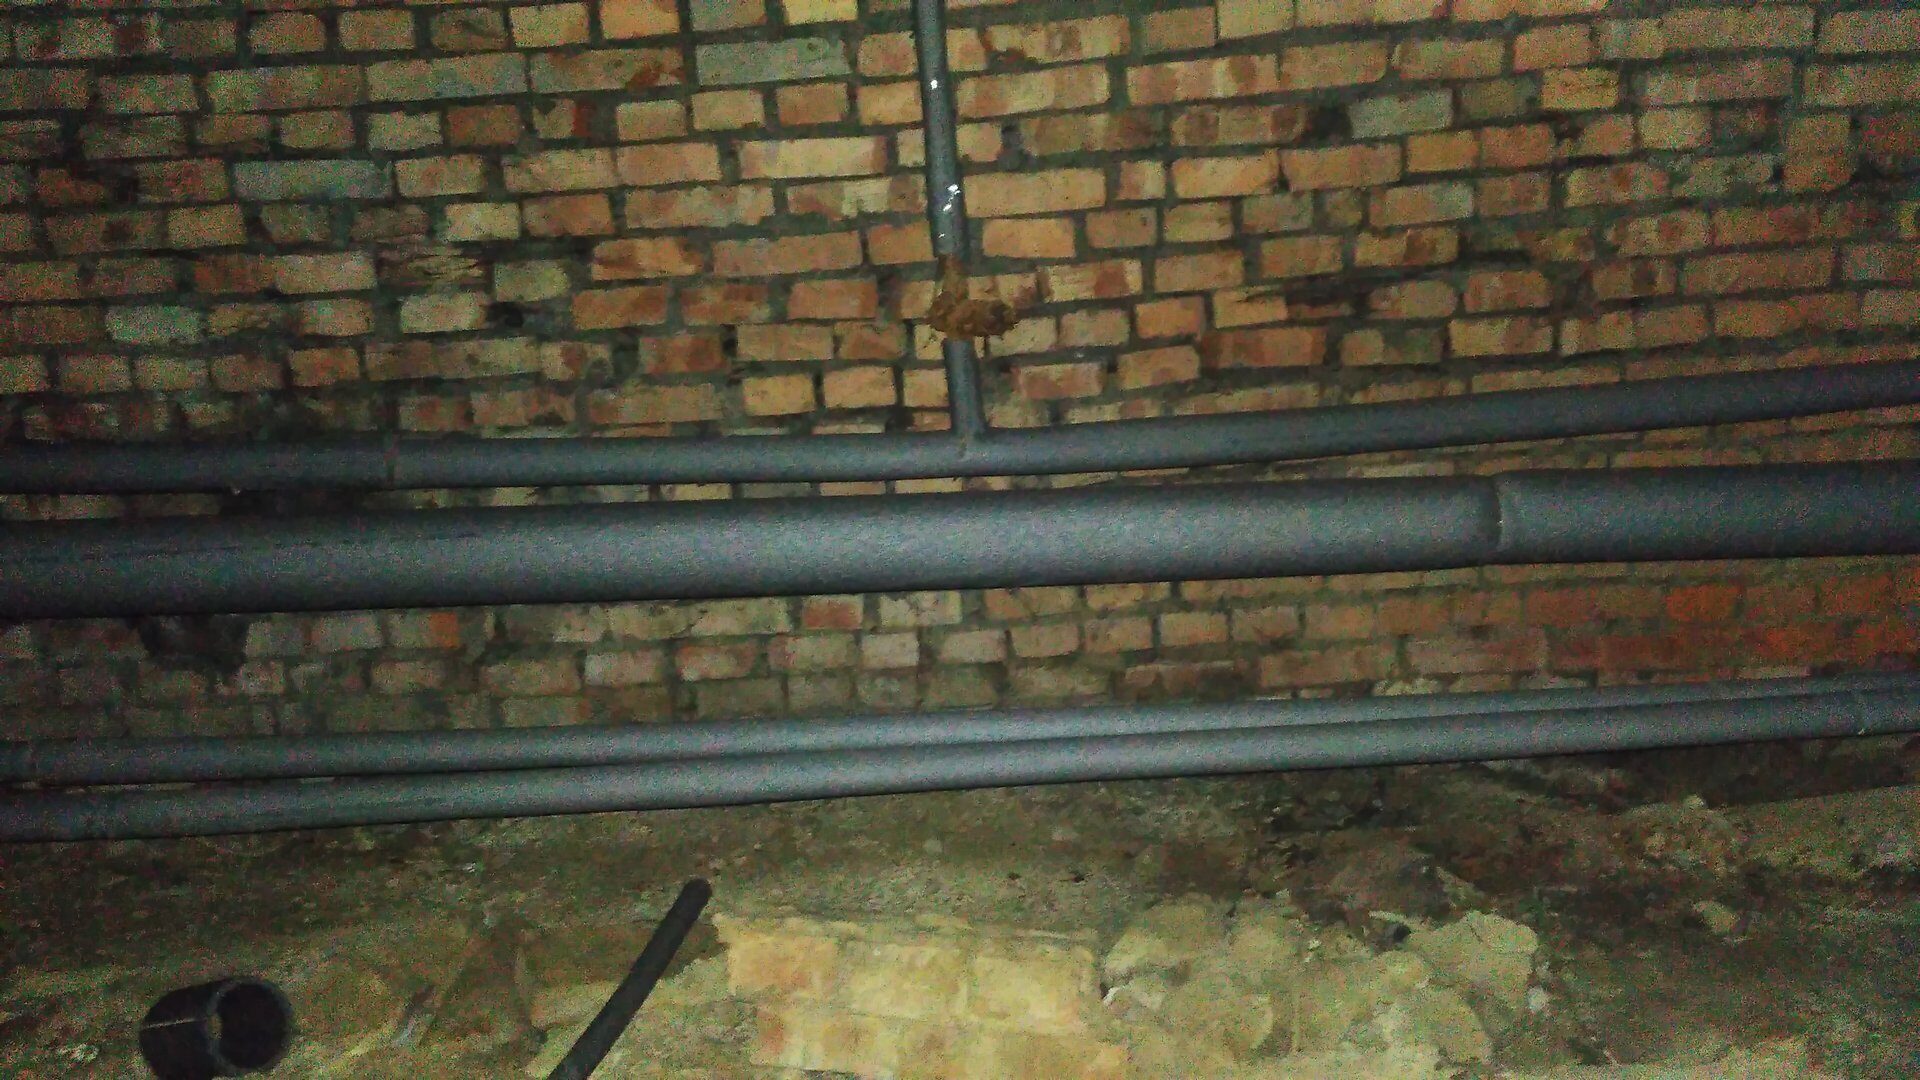 Чем утеплить трубы отопления в подвале многоквартирного дома